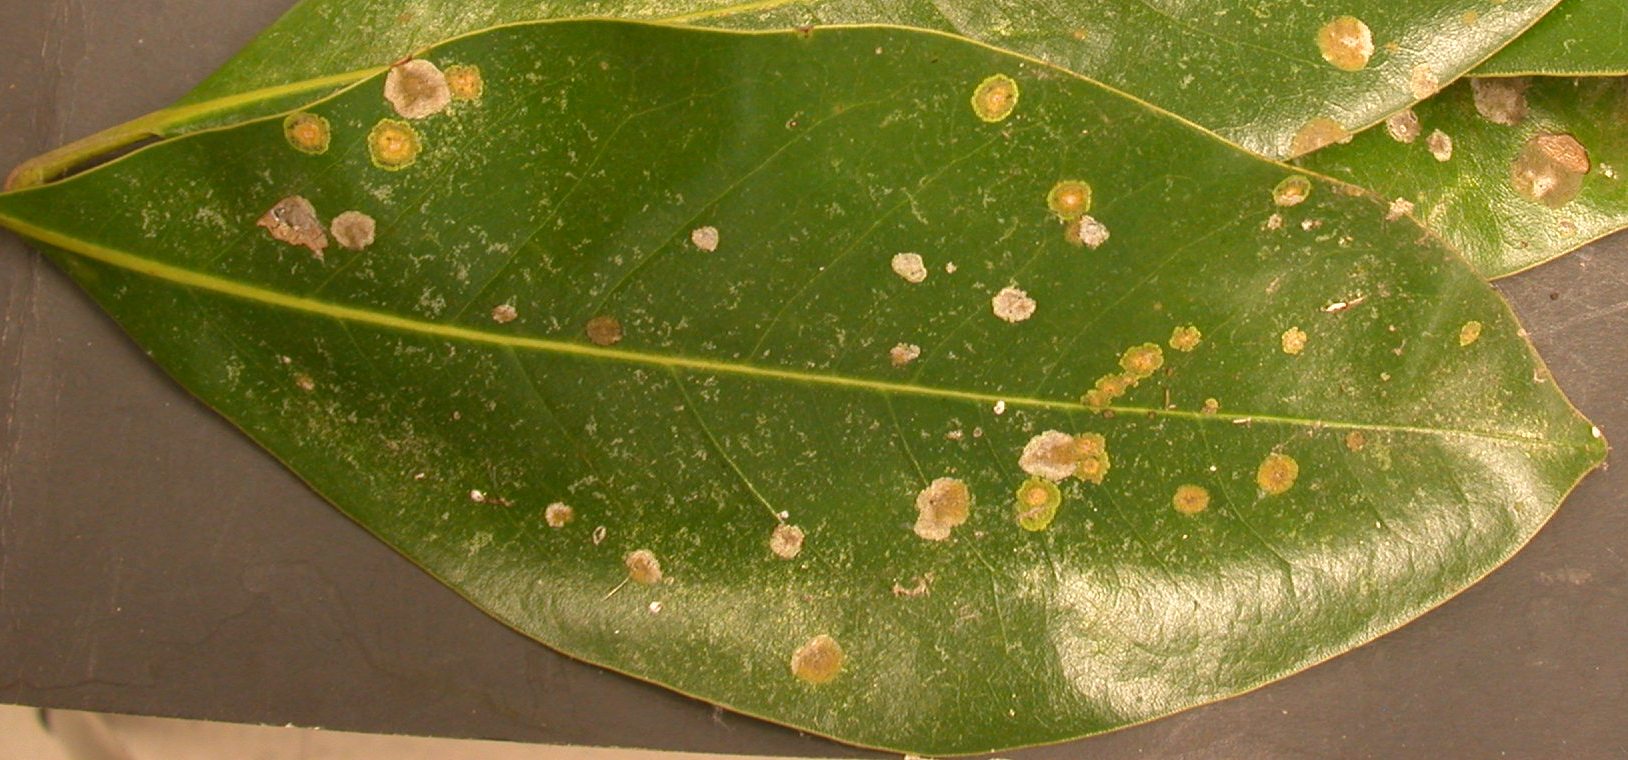 Plant Disease: Brown Spots | Garden Guides